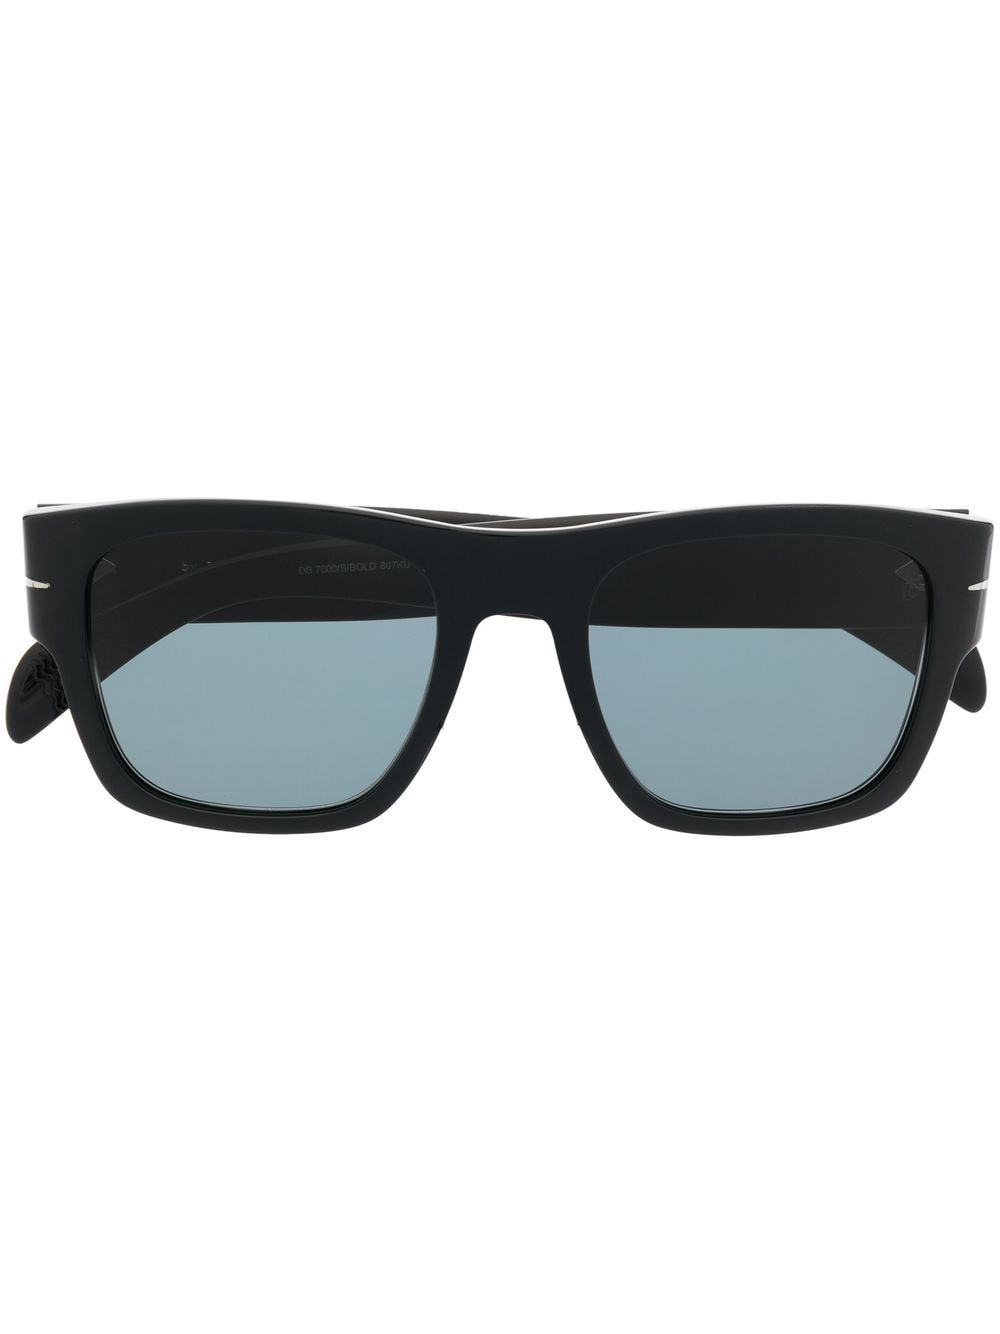 Eyewear by David Beckham Bold square-frame sunglasses - Black von Eyewear by David Beckham